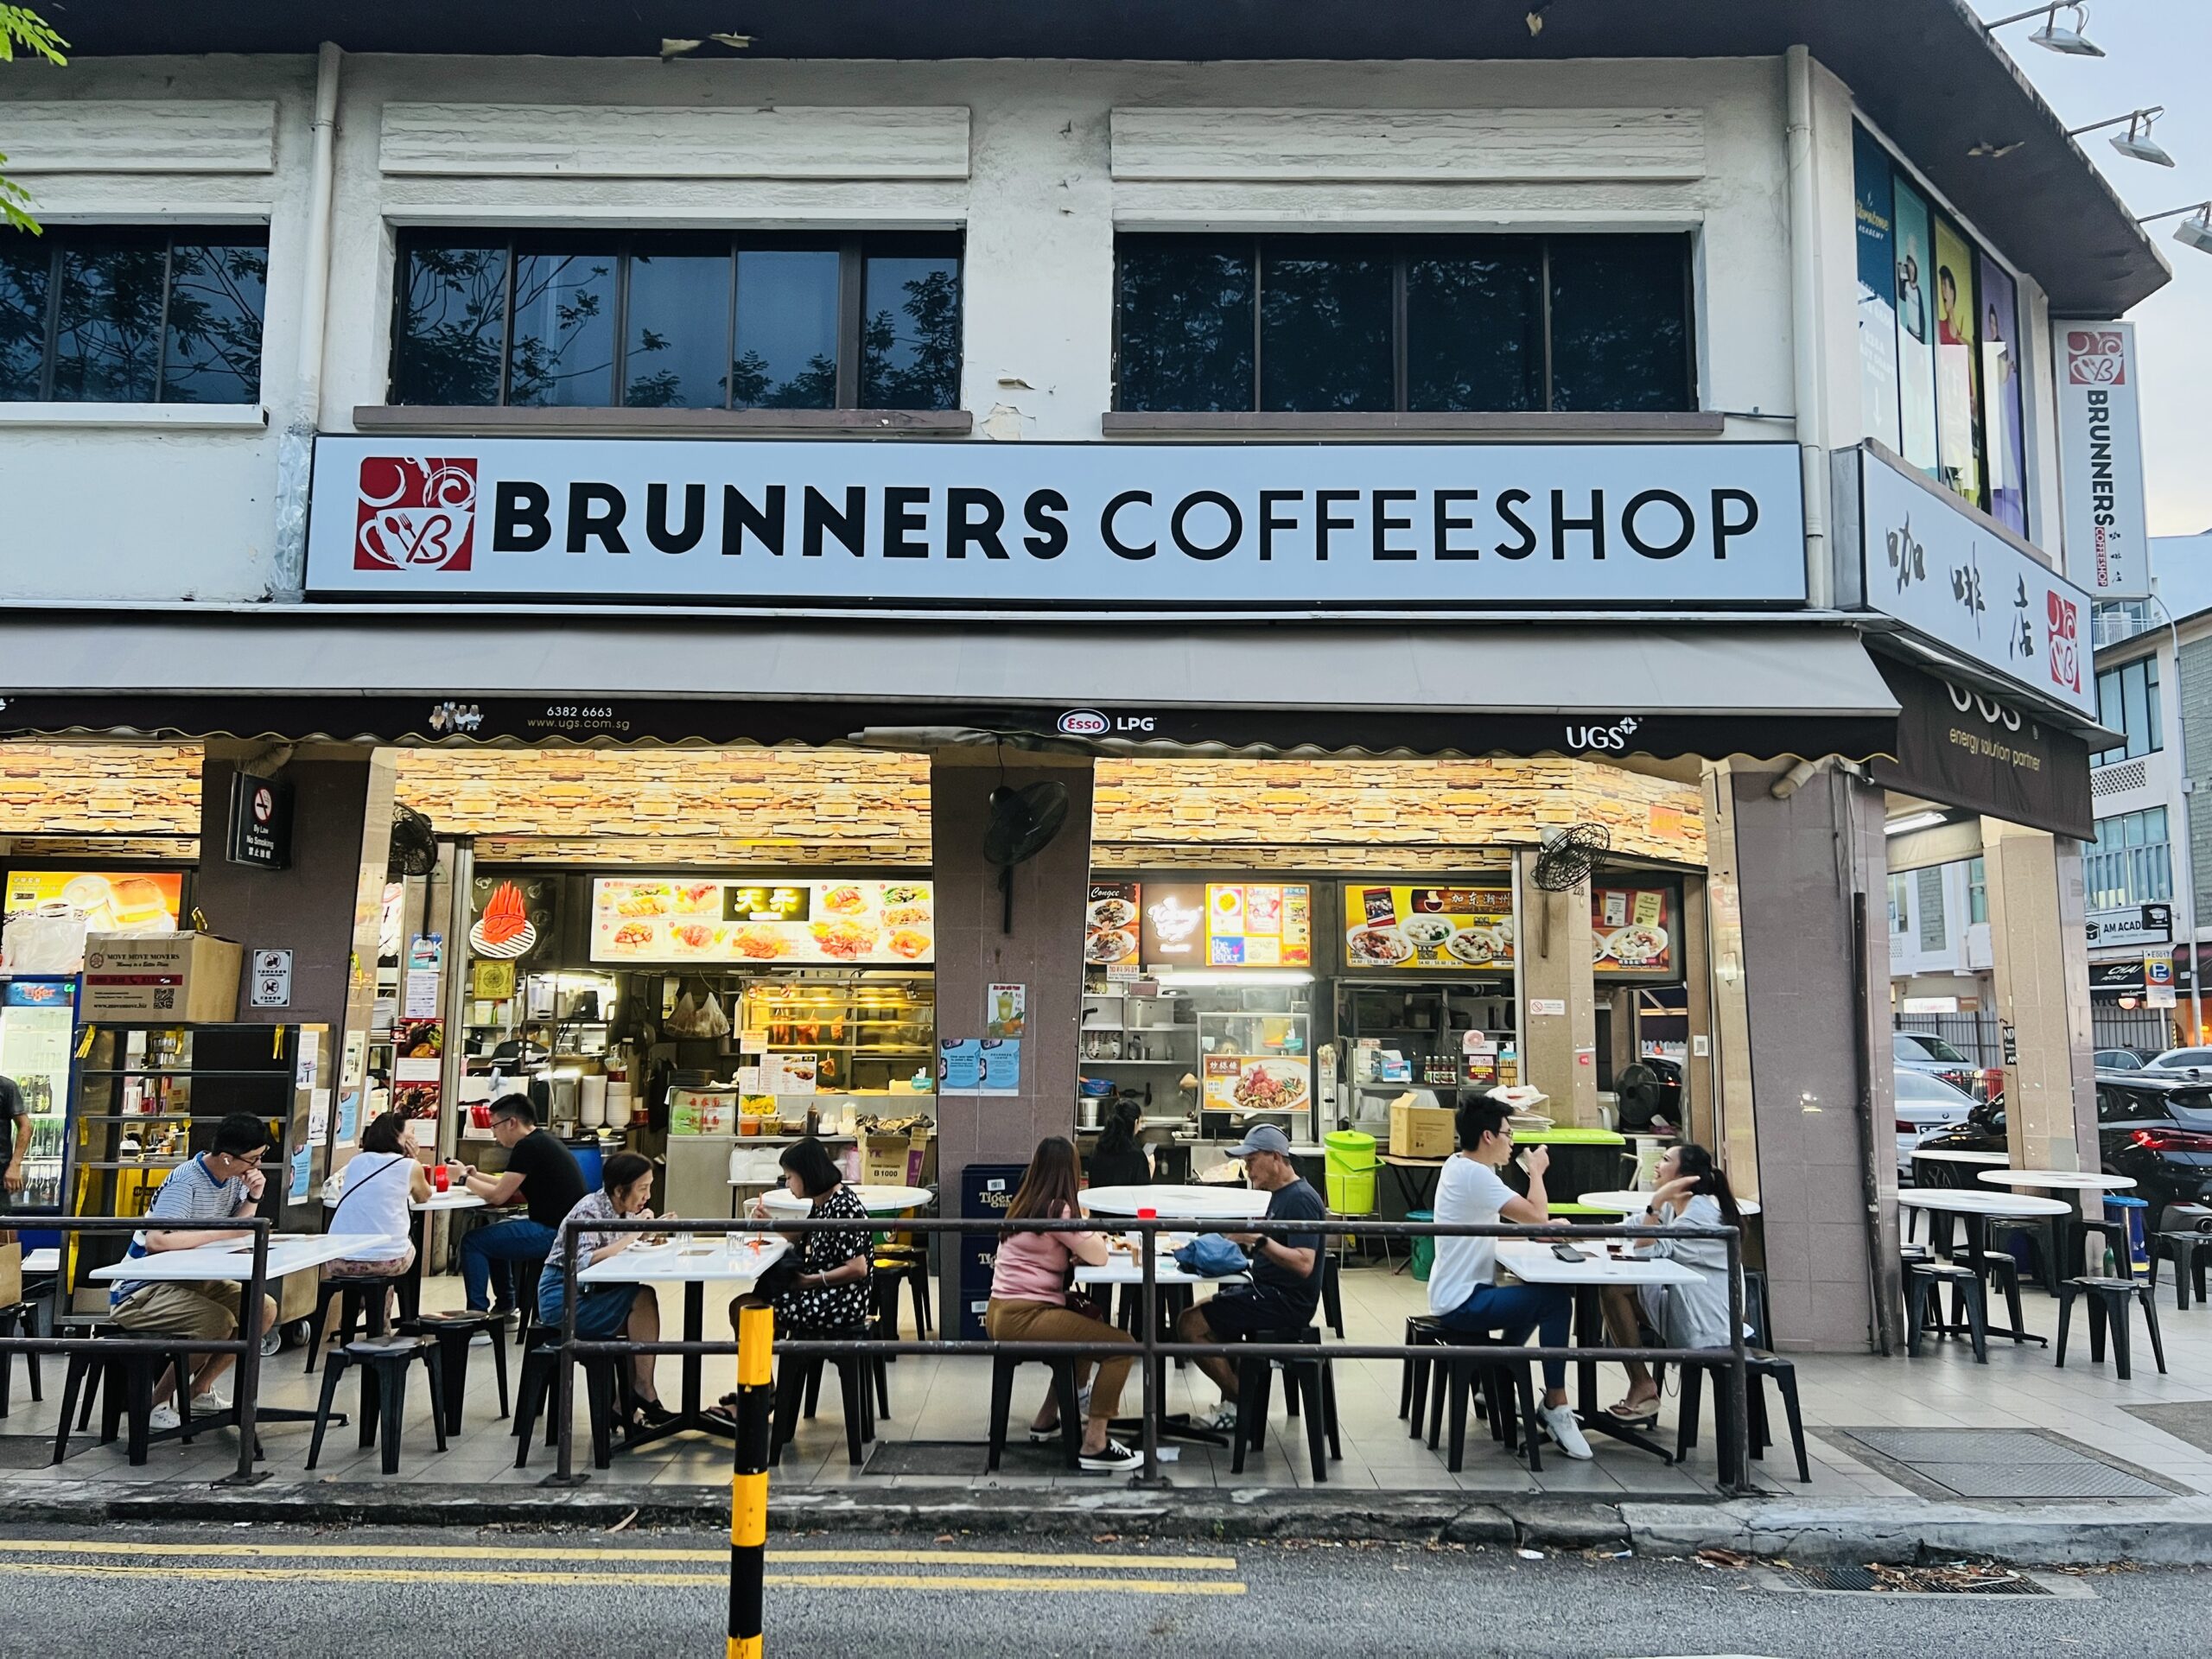 Meet 4 Meat - Brunners Coffeeshop